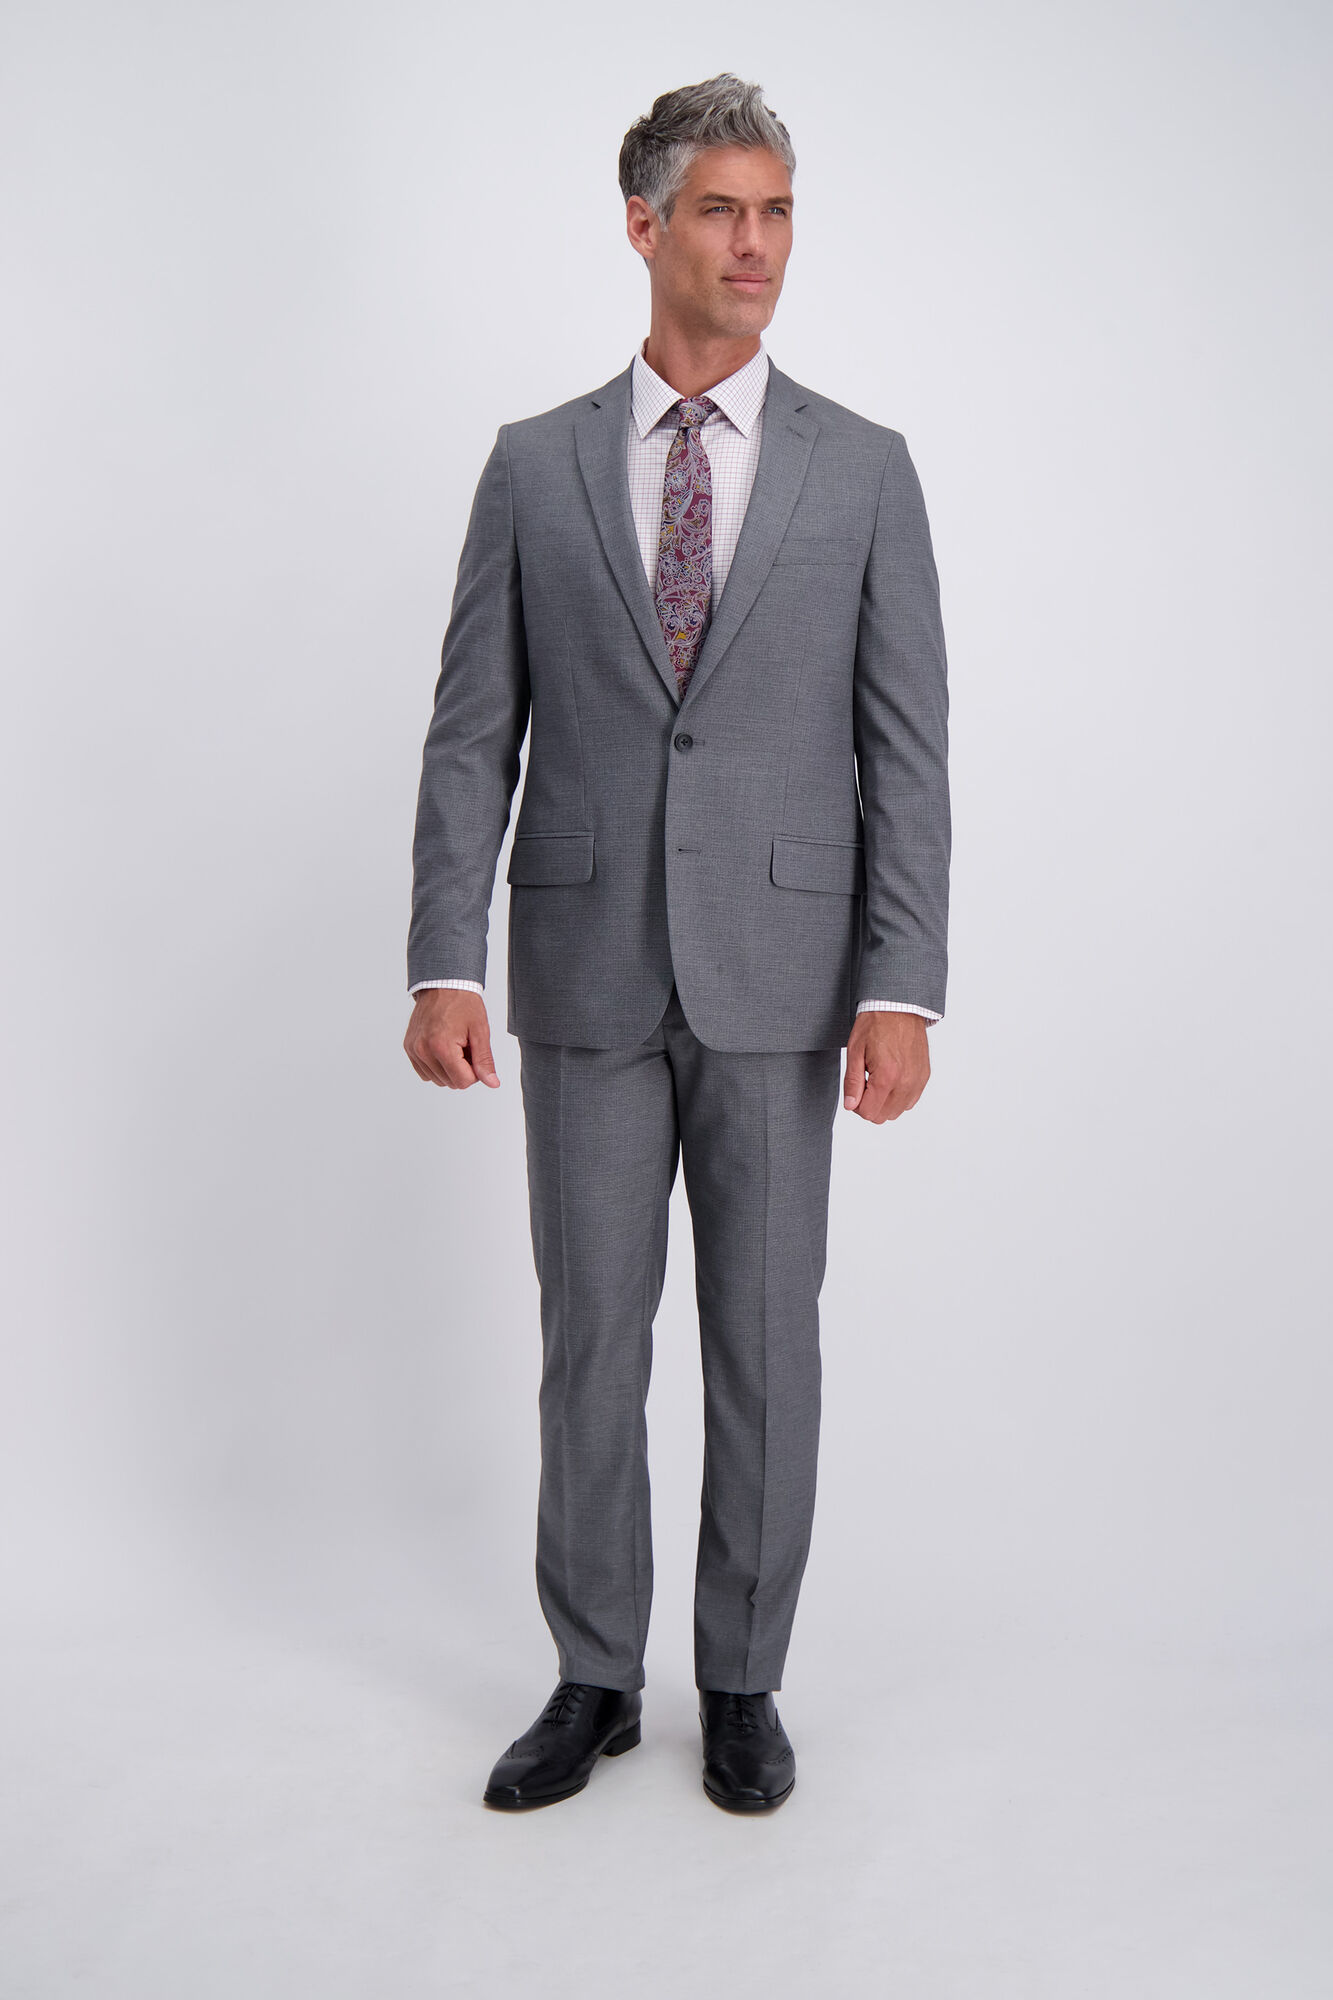 J.M. Haggar Suit Coat - Subtle Grid Graphite (HZ80250 Clothing Suits) photo